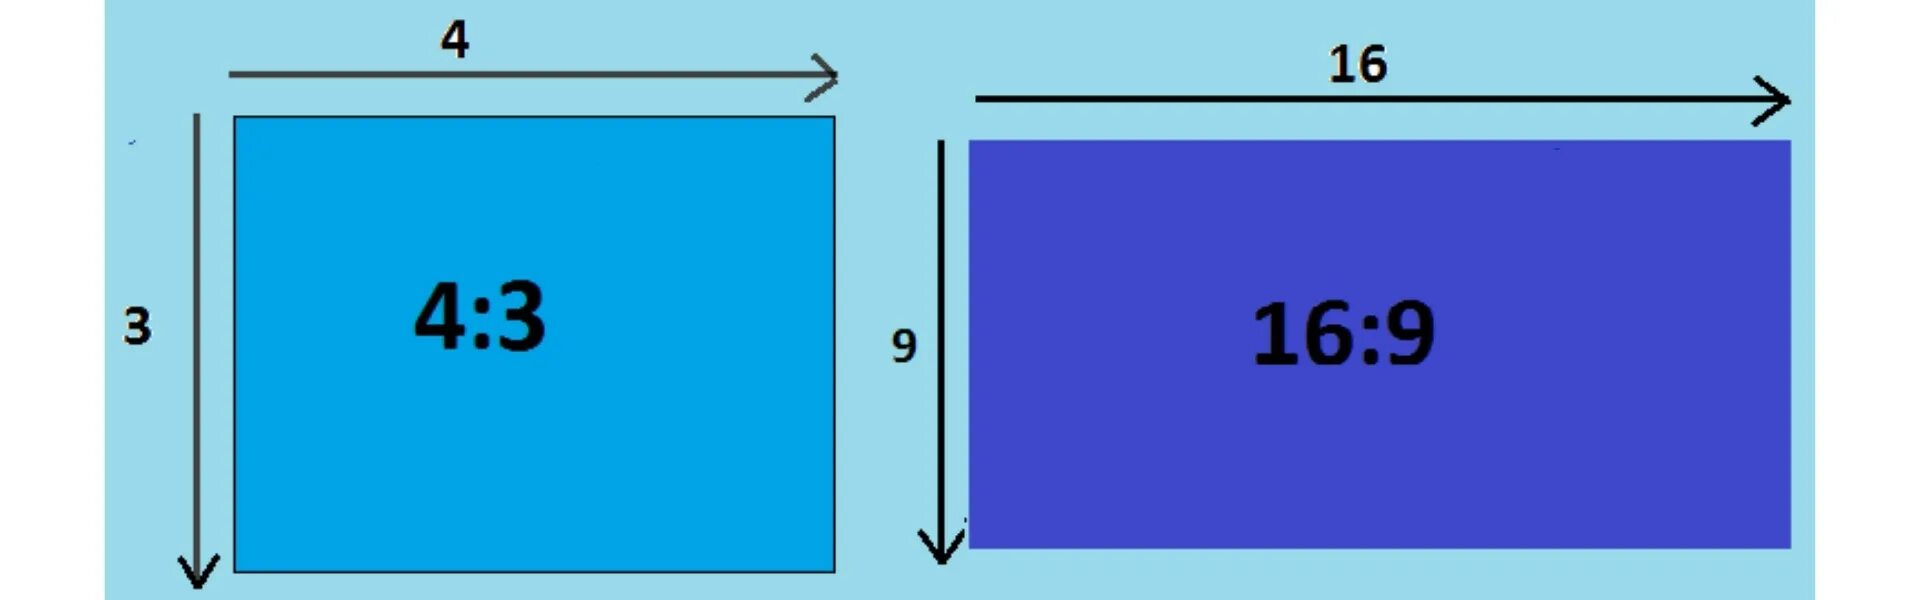 4 на 3 разрешение. Формат 16 9 соотношение сторон. Соотношение сторон монитора 16 10. Соотношение сторон 2:1. Пропорции экрана монитора.